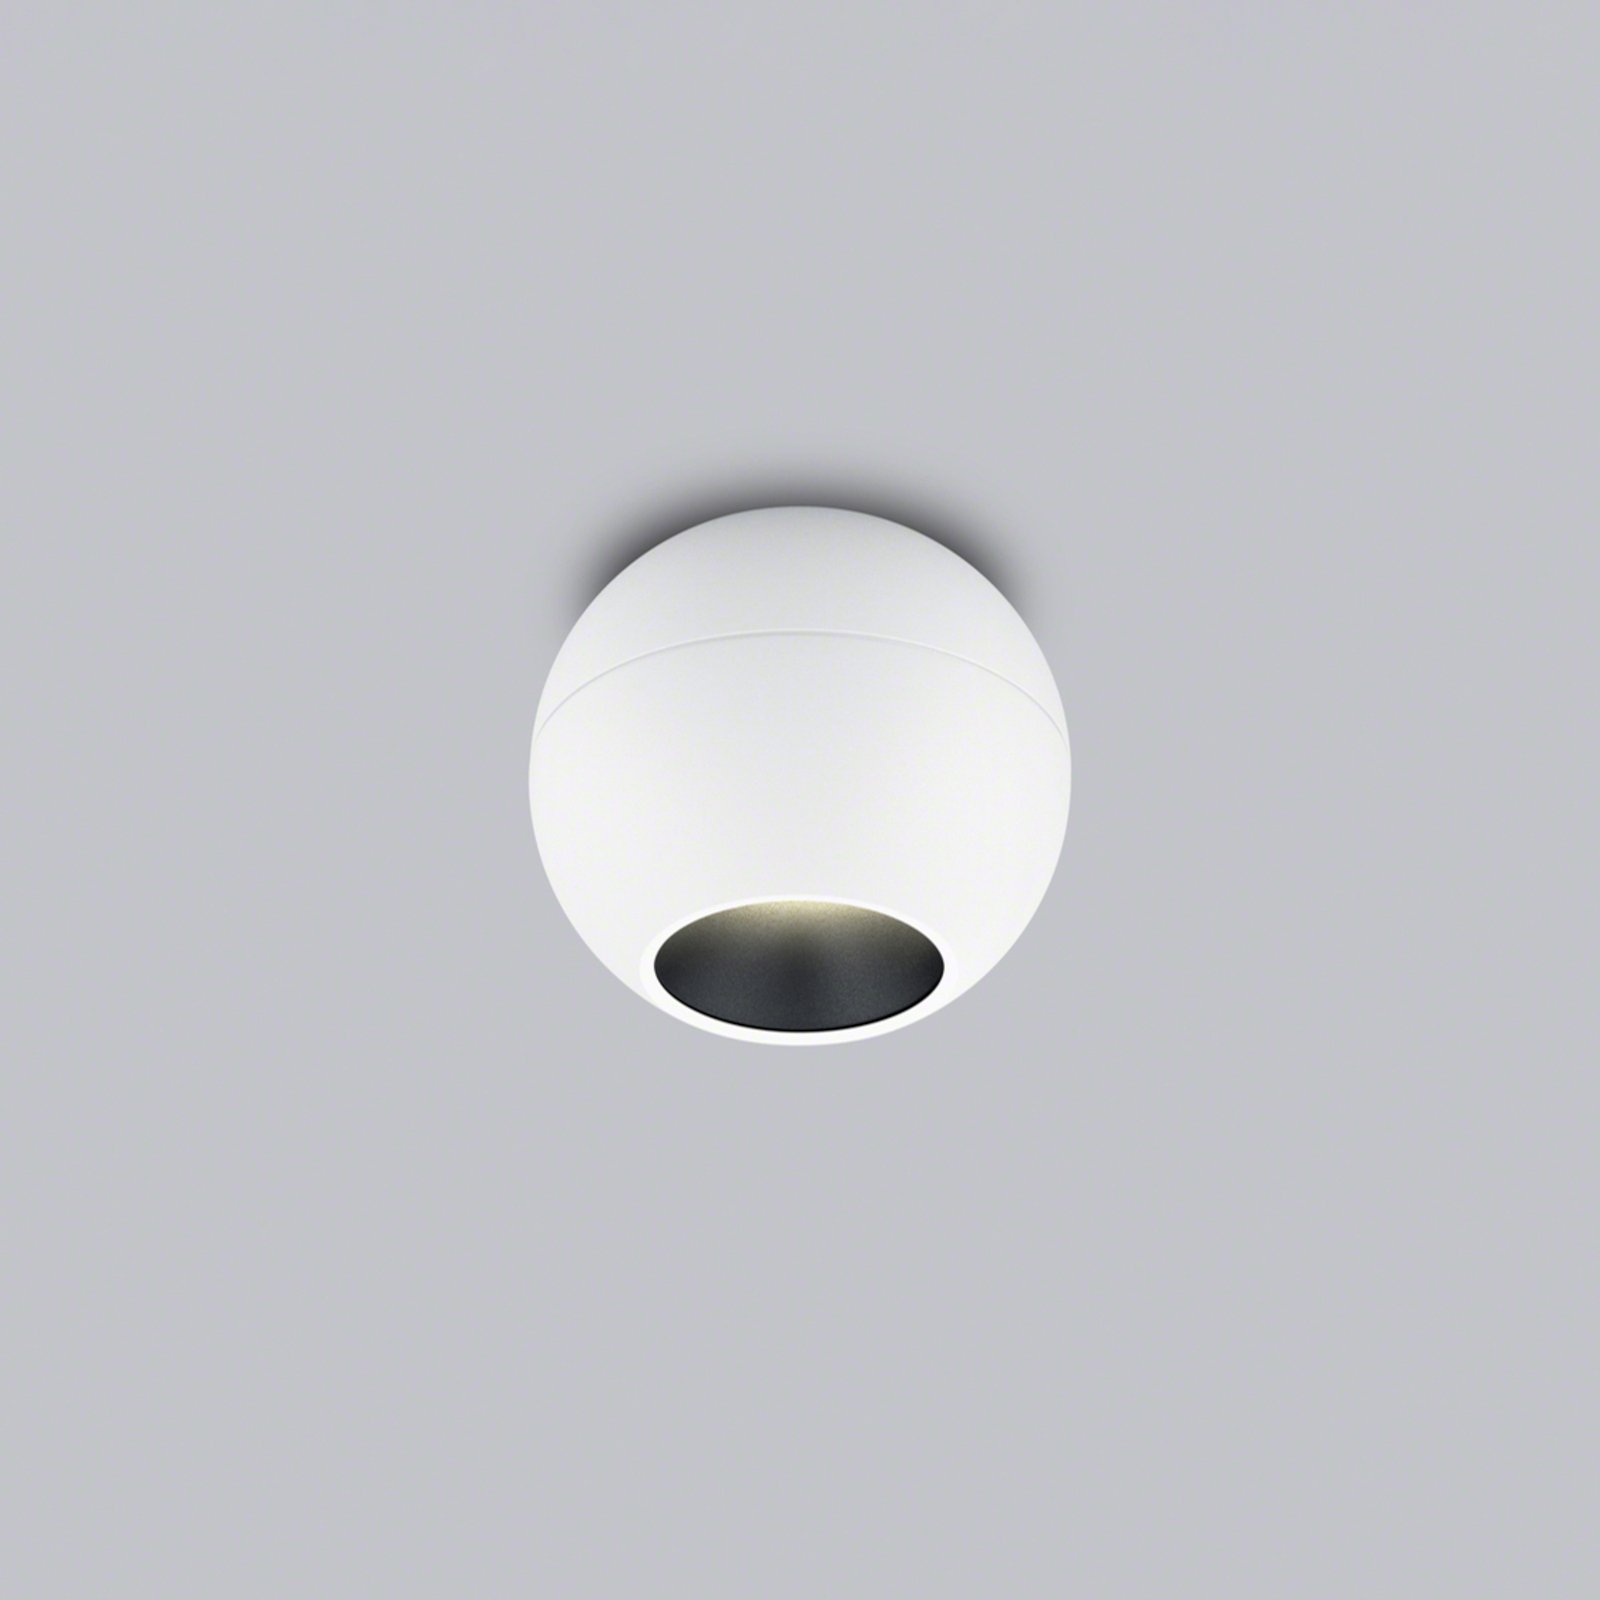 Helestra Eto spot plafond LED Ø10 cm 927 blanc